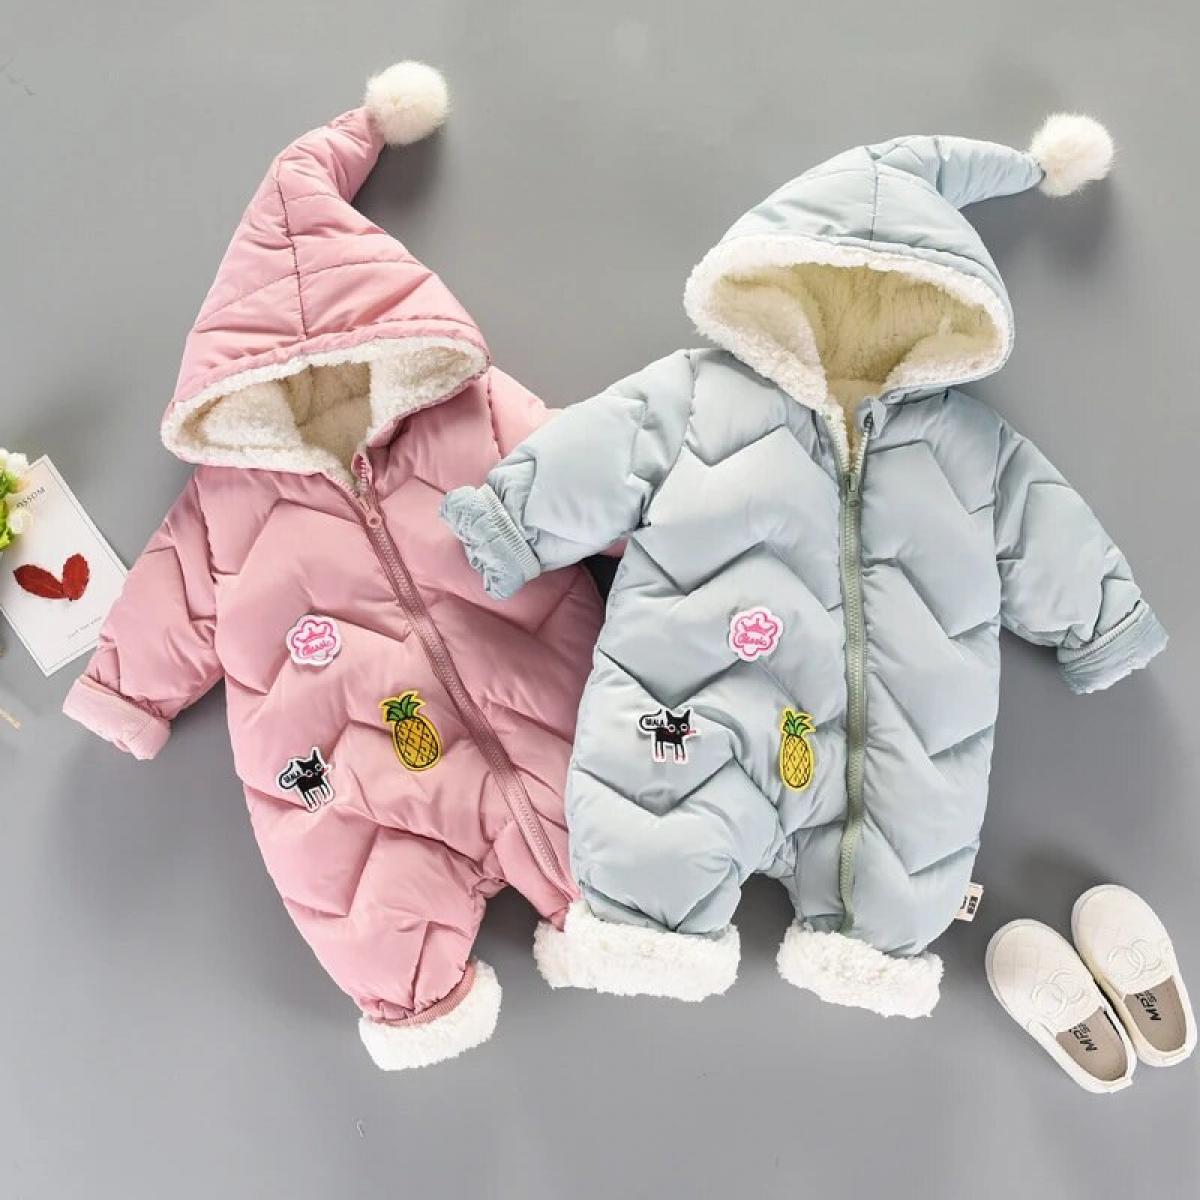 ملابس الشتاء للأطفال حديثي الولادة طفلة سنوسويت ملابس الشتاء الشتوية طفلة ملابس الثلوج